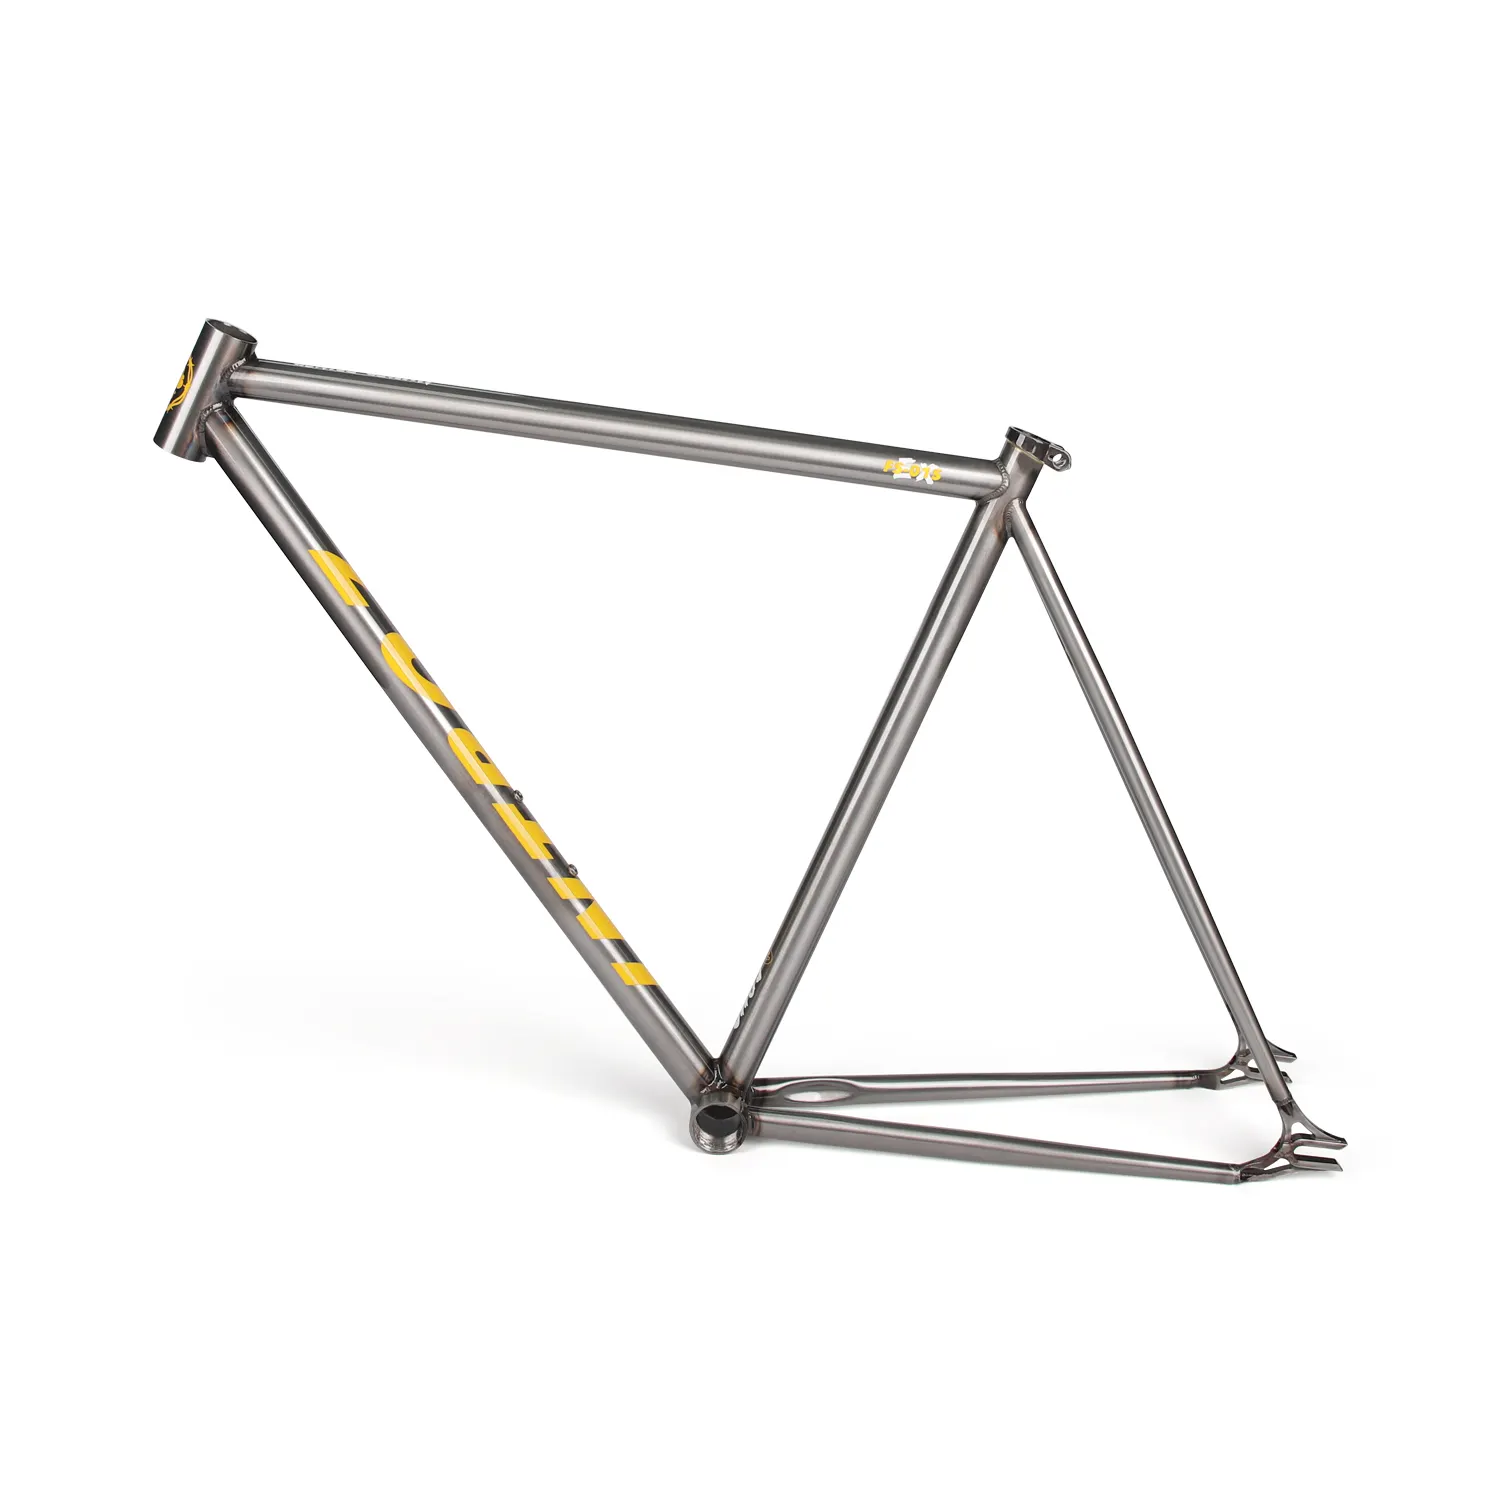 Piezas de cuadro de bicicleta de acero FM002, piezas de repuesto para bicicleta para cuadro de bicicleta de piñón fijo 700C, marco de acero de alto carbono colorido con horquilla